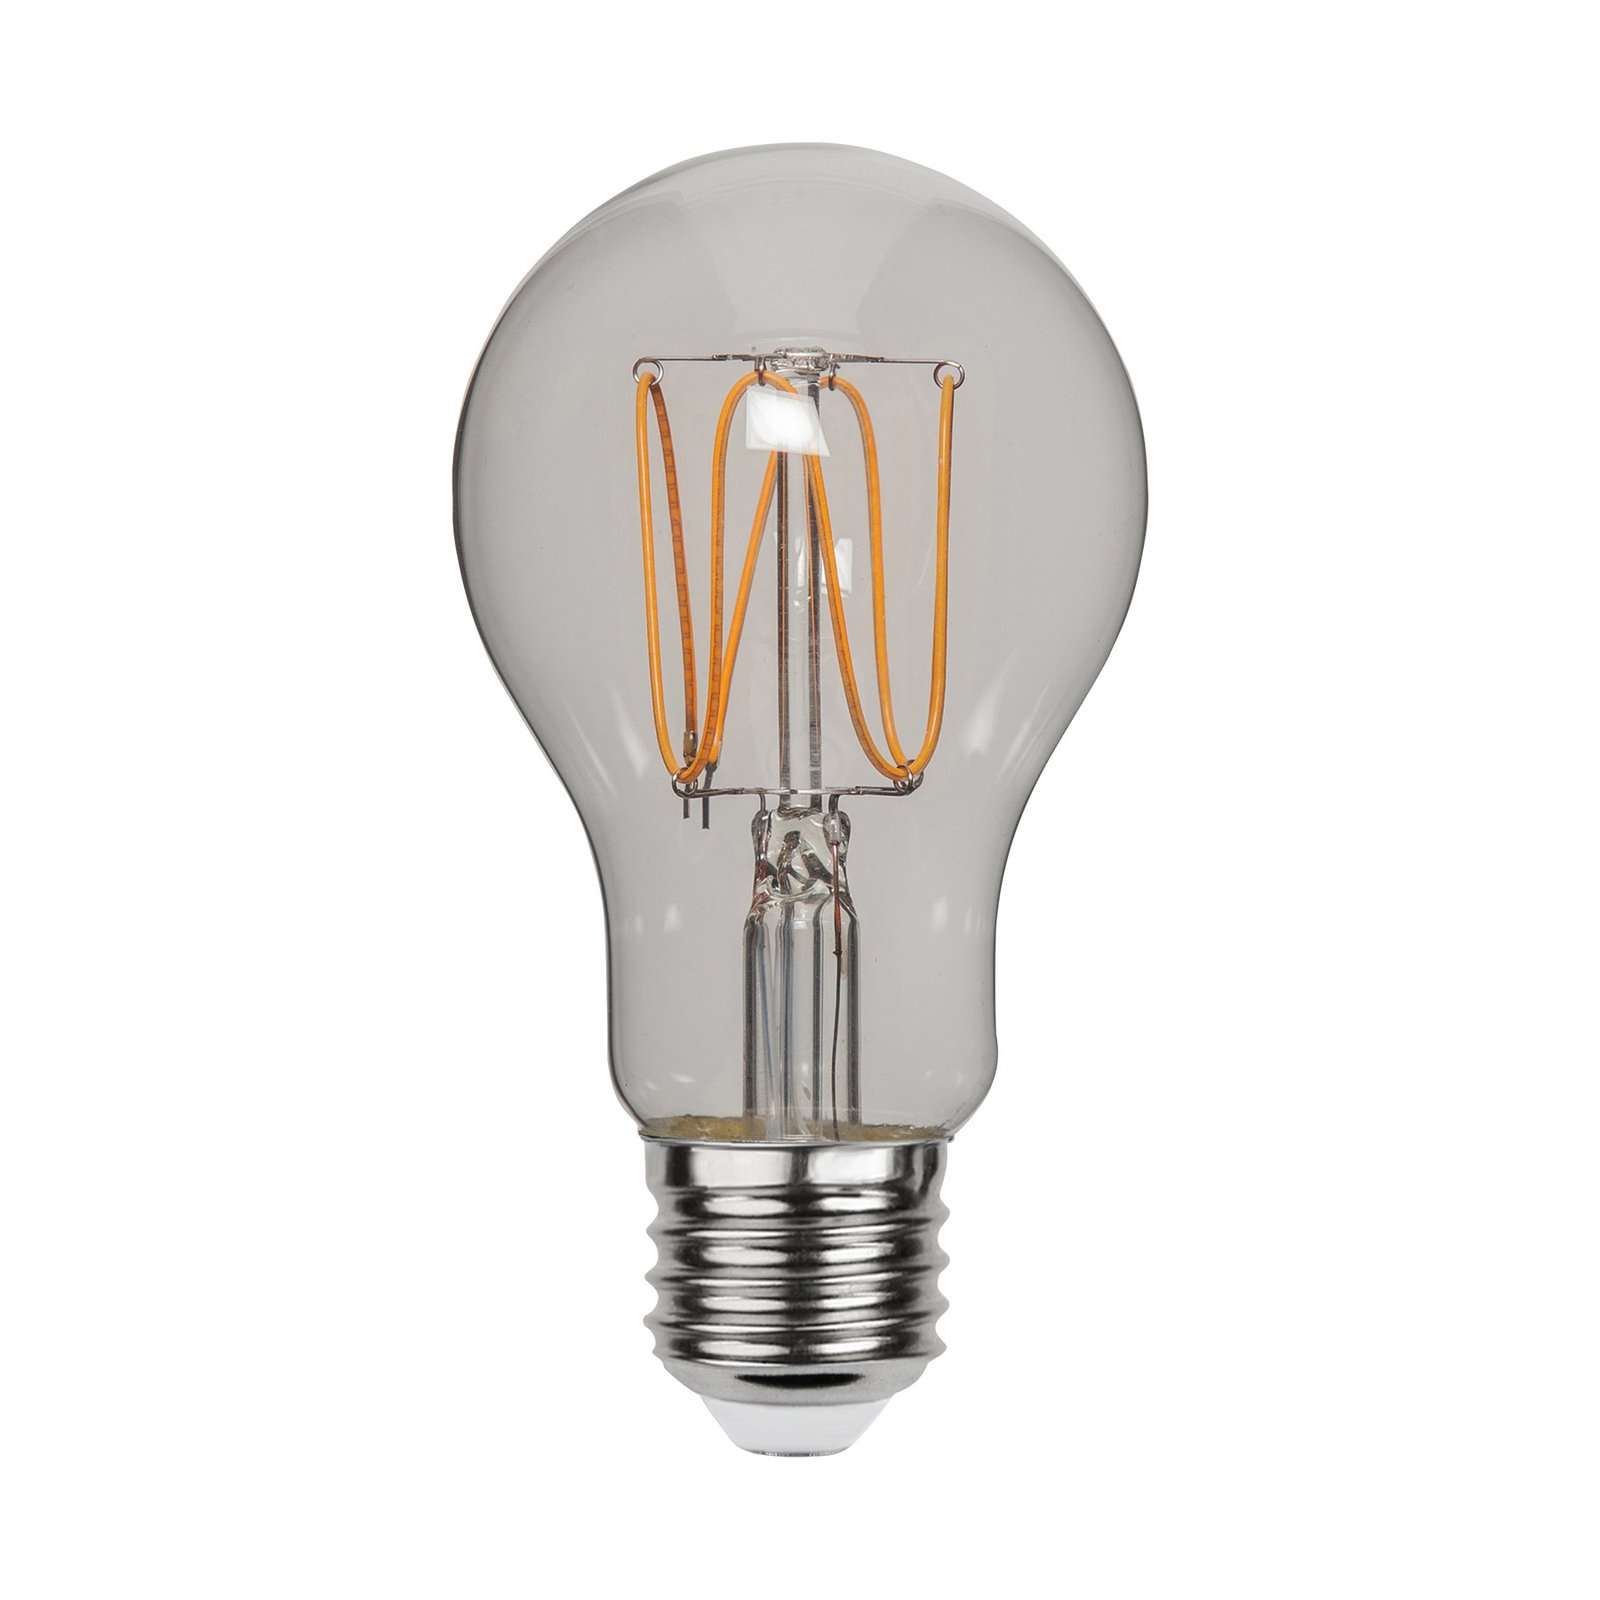 LED lamp A60 filament E27 3,8W 1800K dimbaar